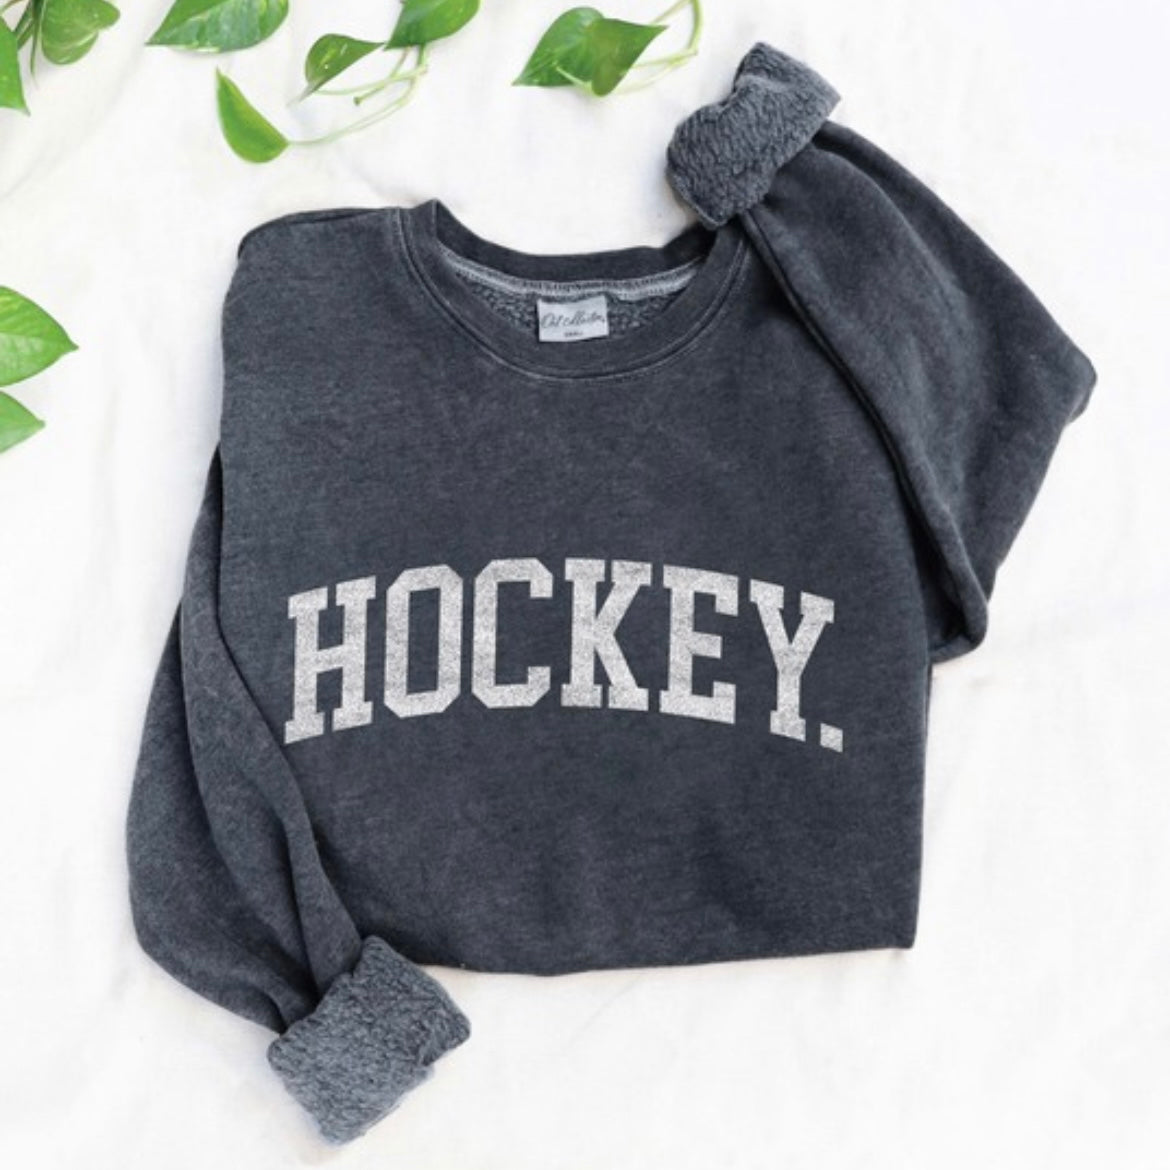 Hockey Sweatshirt